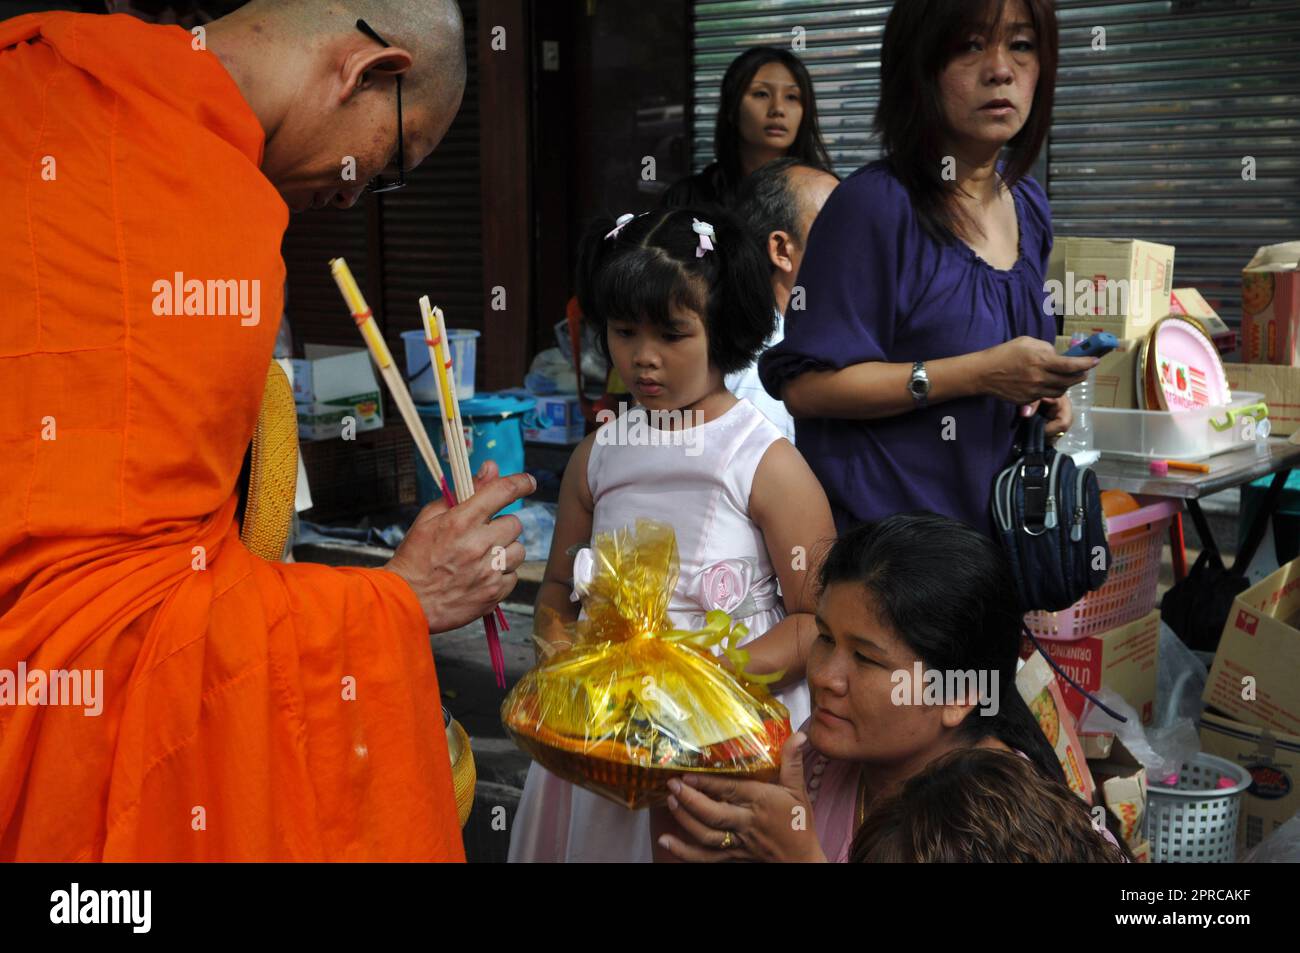 Un moine bouddhiste thaïlandais des habitants bénissant et recevant des almes dans le cadre d'un rituel du matin. Photo prise à Bangkok, Thaïlande. Banque D'Images